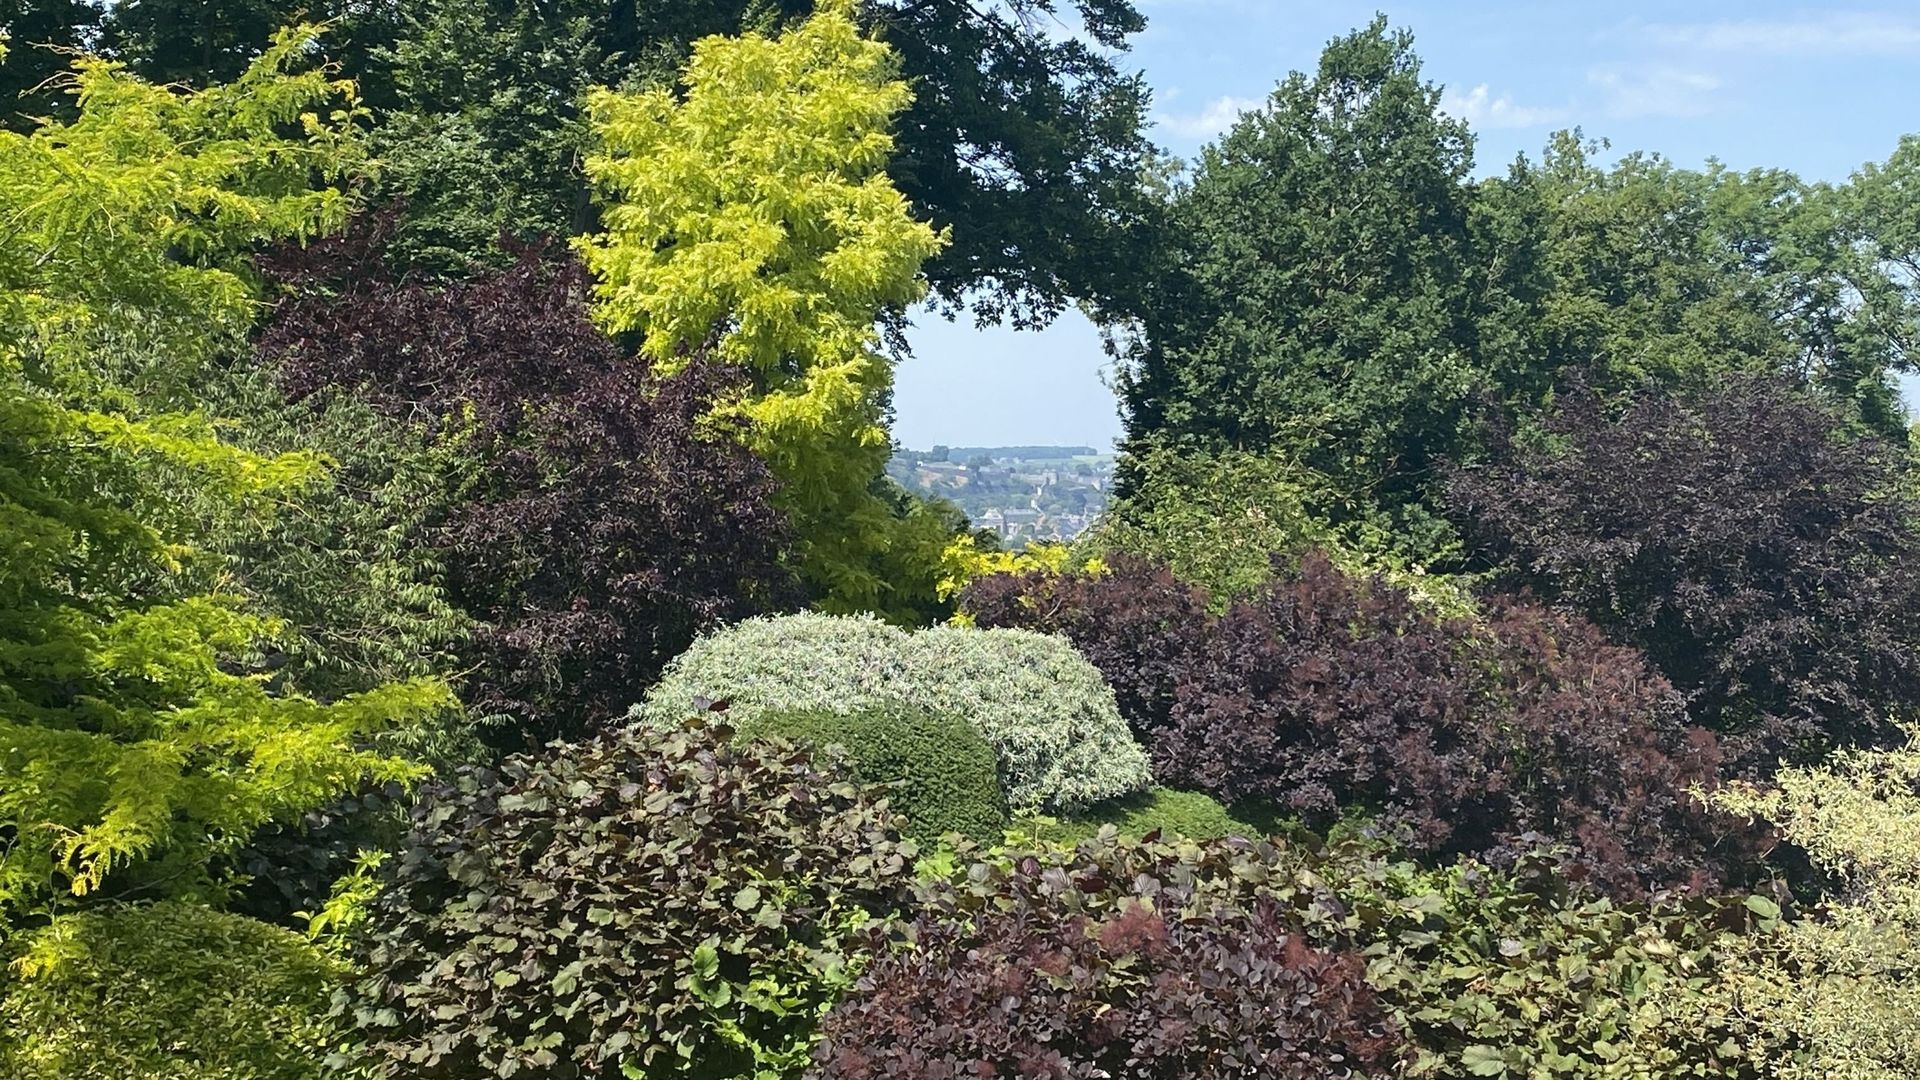 Une percée dans les arbres permet d’apercevoir au loin la citadelle et le téléphérique de Namur.